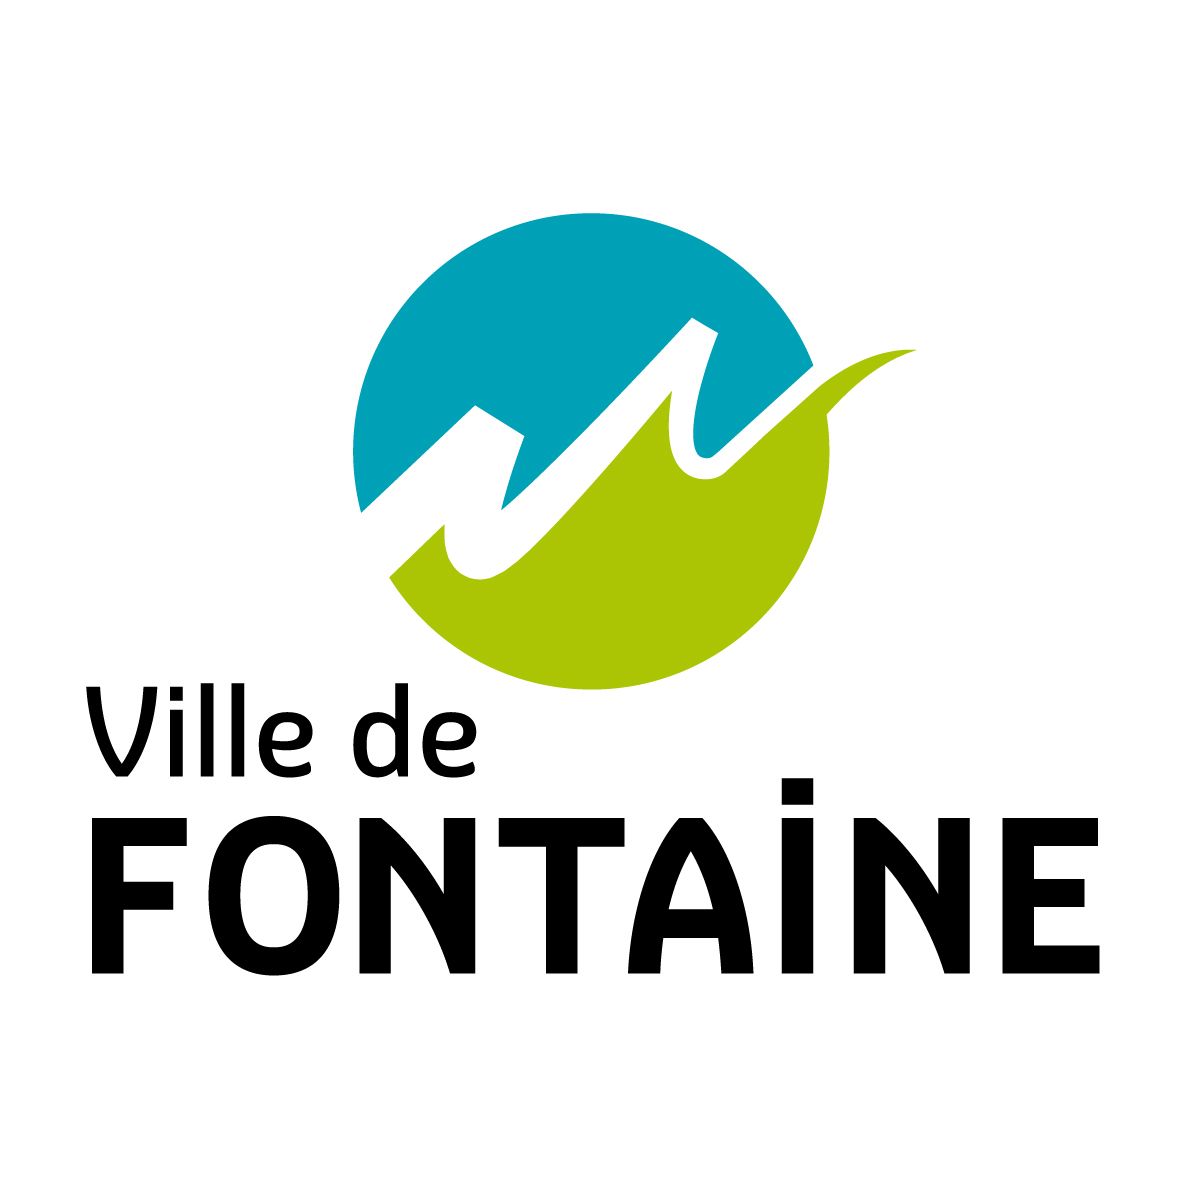 TRANSFERT VTC Fontaine AÉROPORT Aéroport Lyon 139-90 TTC